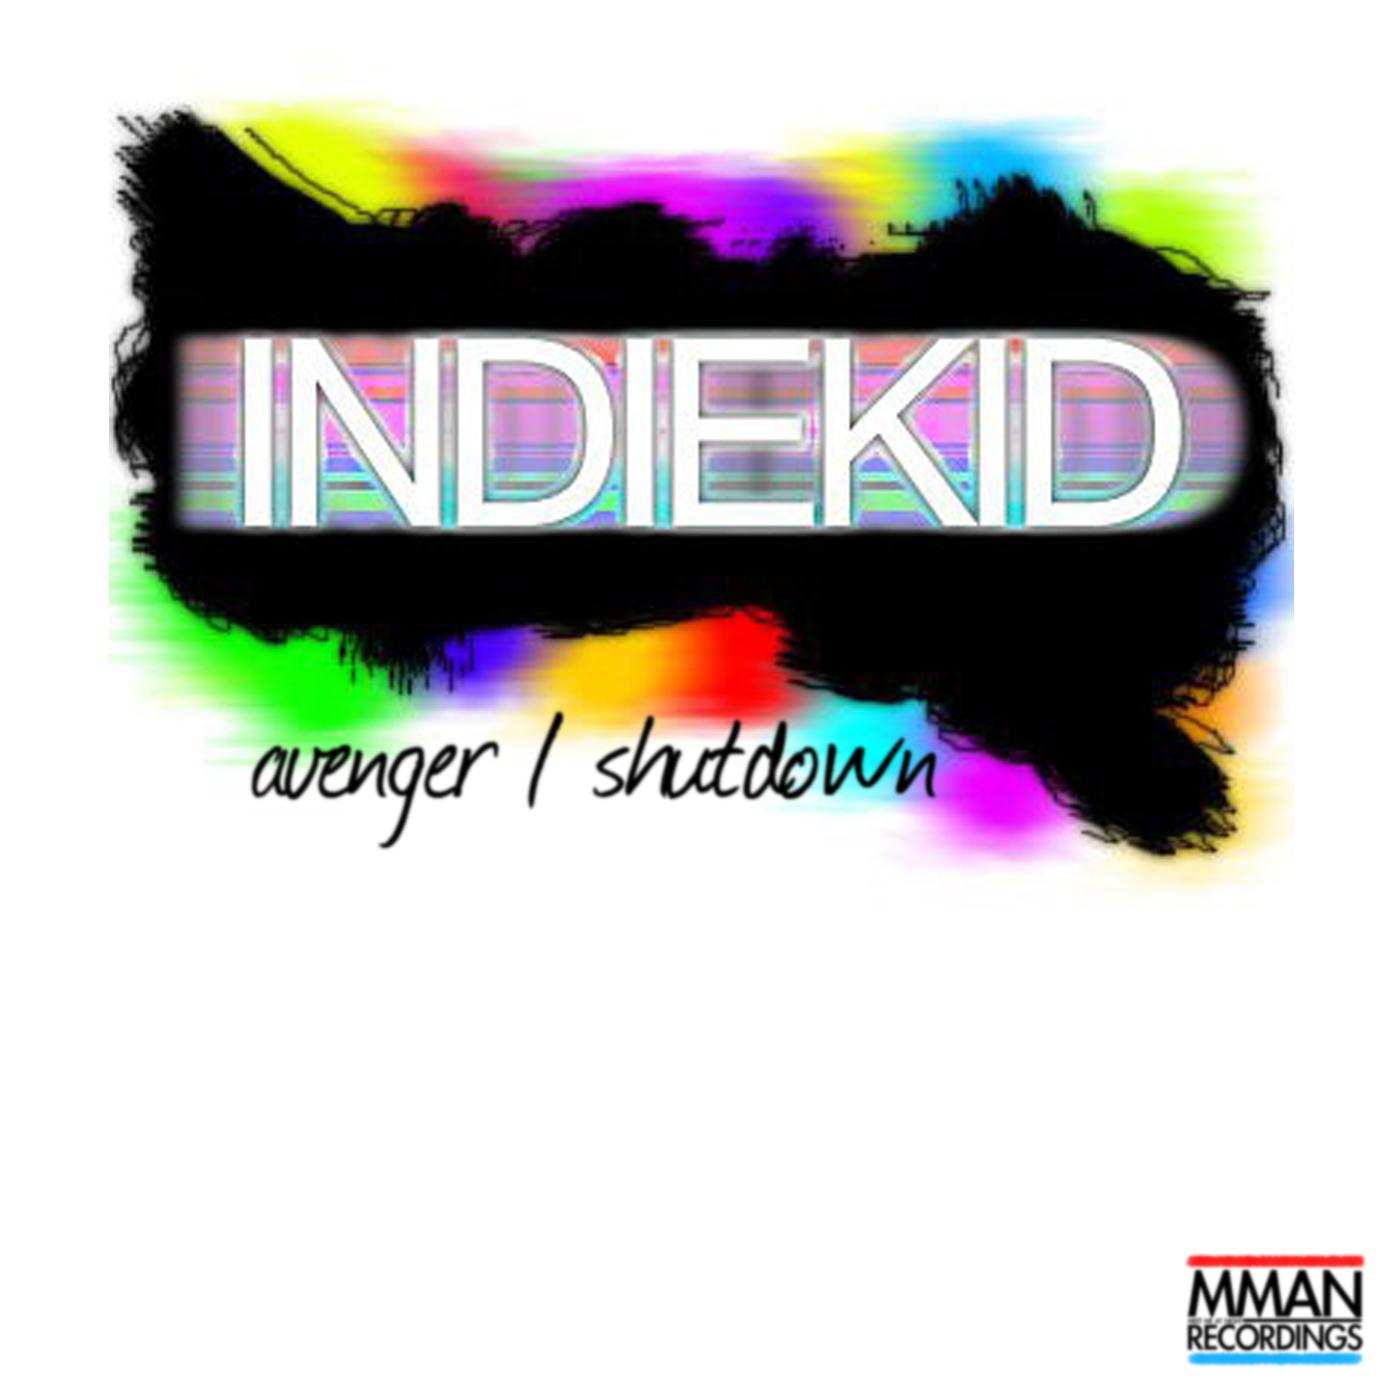 Indiekid - Shutdown